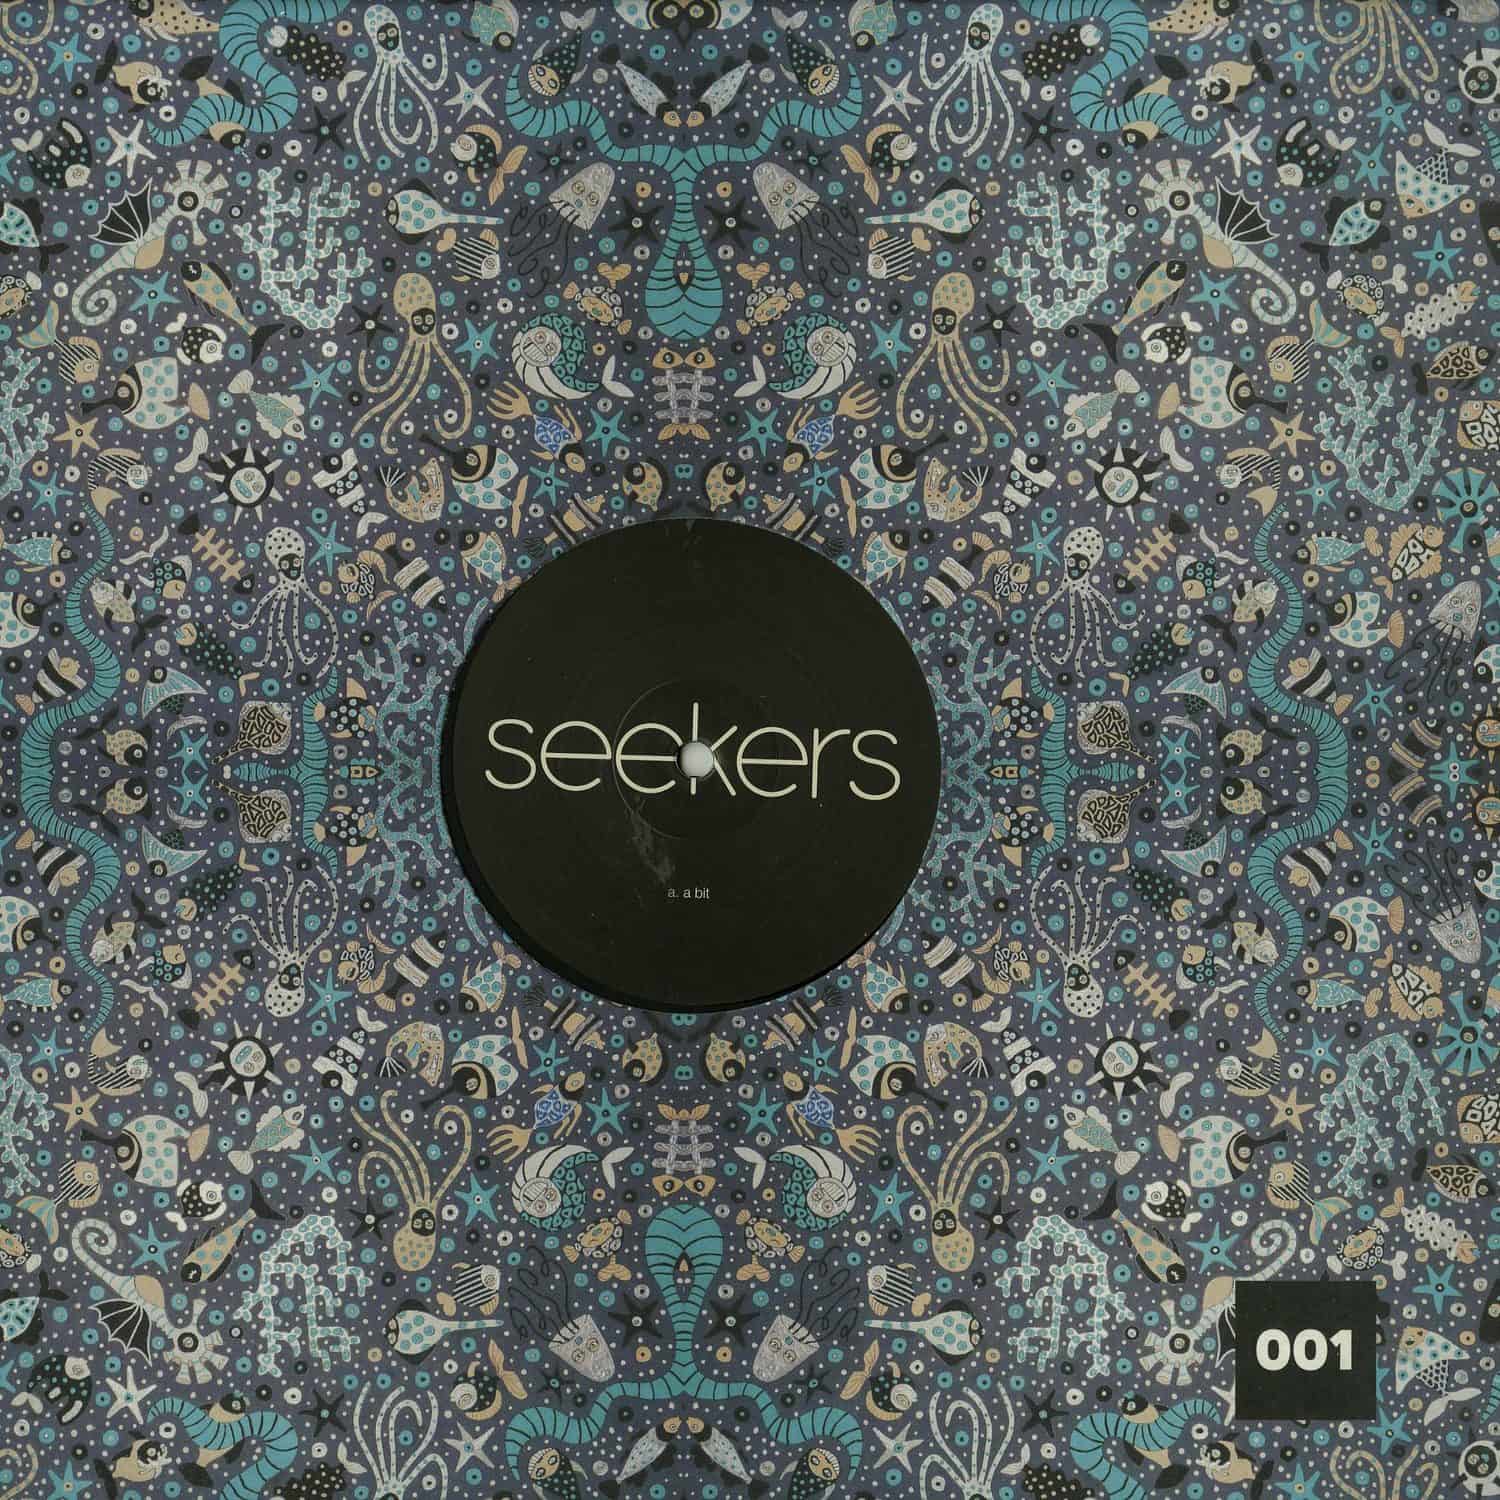 Seekers - A BIT EP